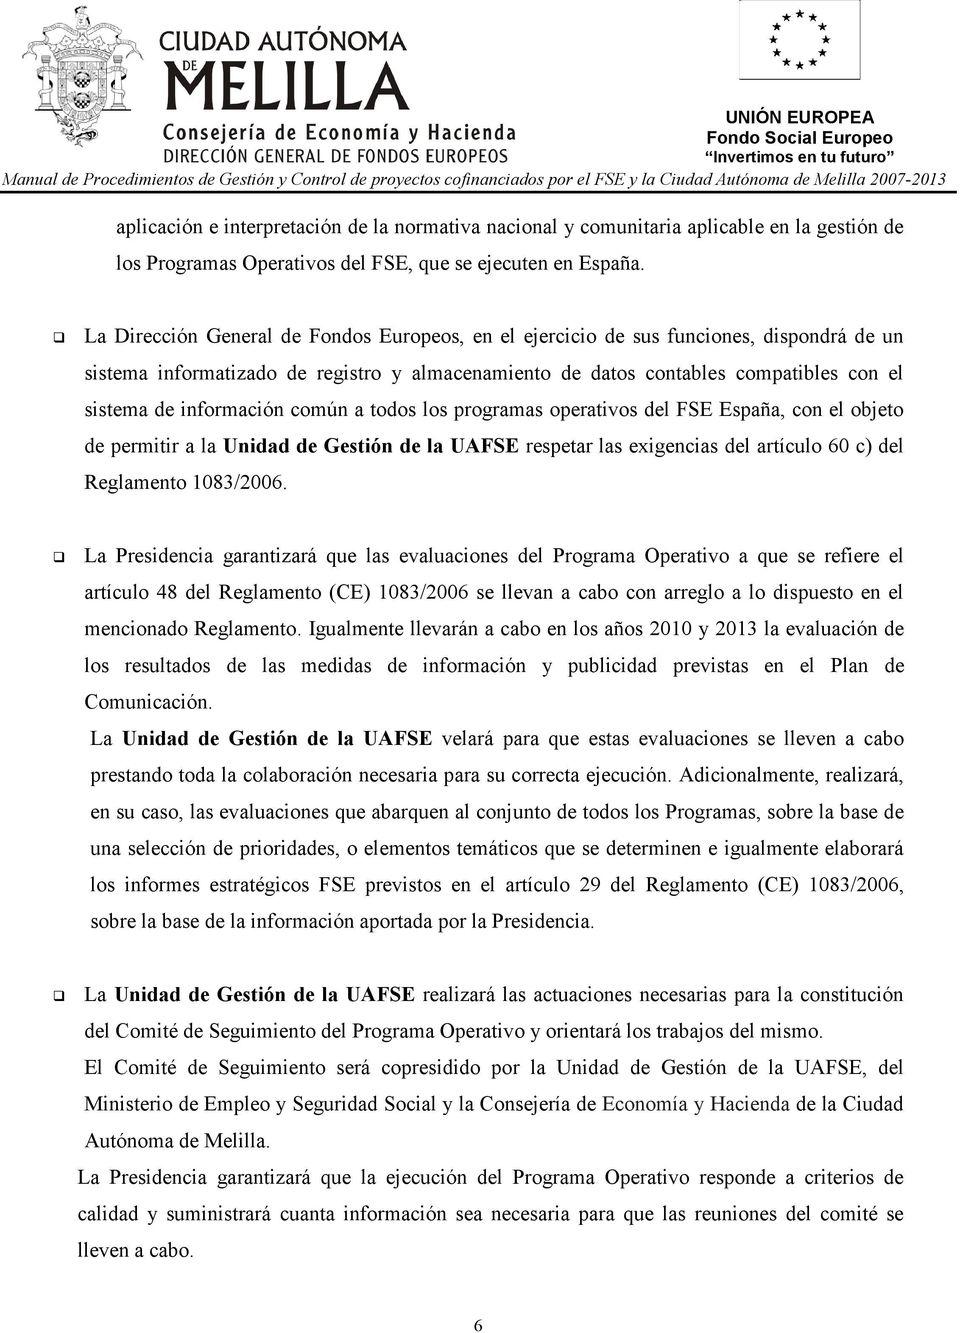 información común a todos los programas operativos del FSE España, con el objeto de permitir a la Unidad de Gestión de la UAFSE respetar las exigencias del artículo 60 c) del Reglamento 1083/2006.